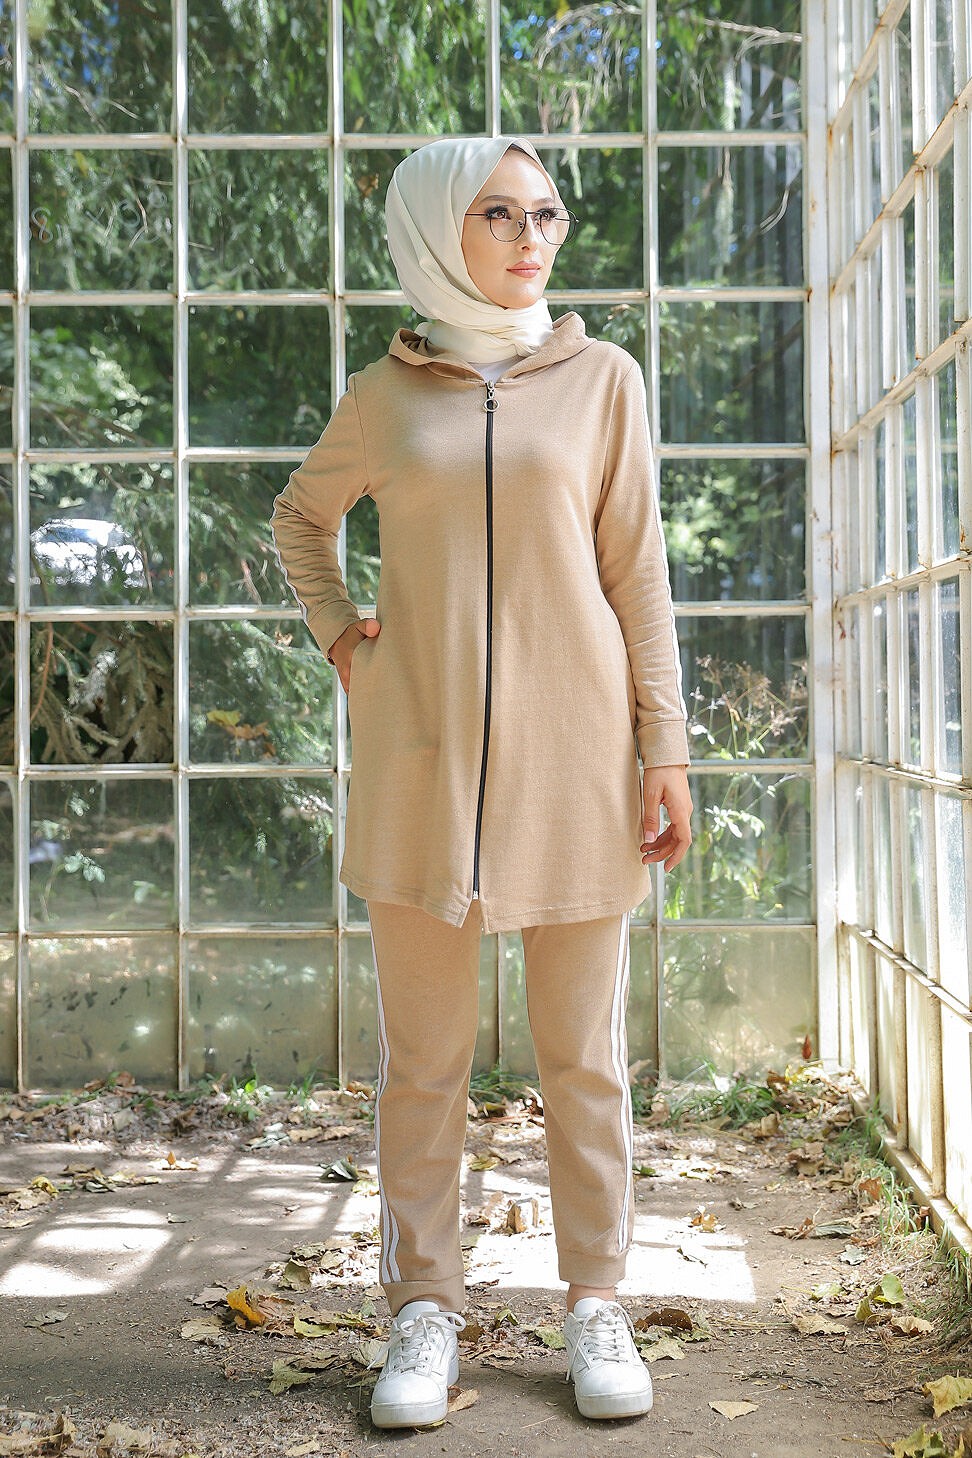 Ensemble Sport Veste et pantalon - Survêtement pour femme musulmane -  Couleur Camel - Prêt à porter et accessoires sur